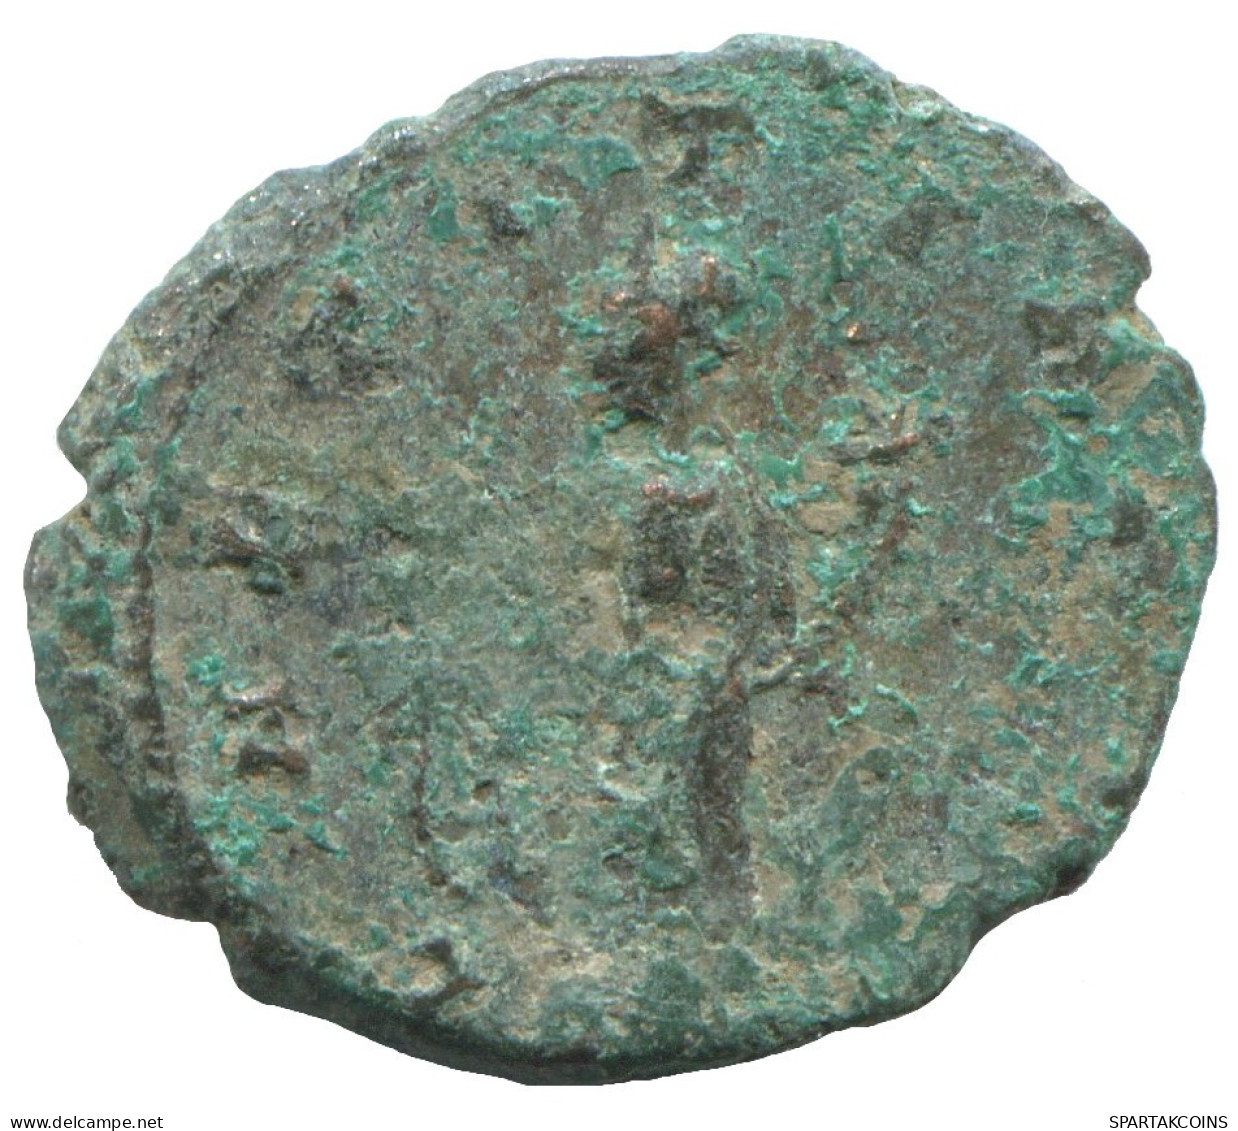 LATE ROMAN IMPERIO Follis Antiguo Auténtico Roman Moneda 2.4g/19mm #SAV1129.9.E.A - Der Spätrömanischen Reich (363 / 476)